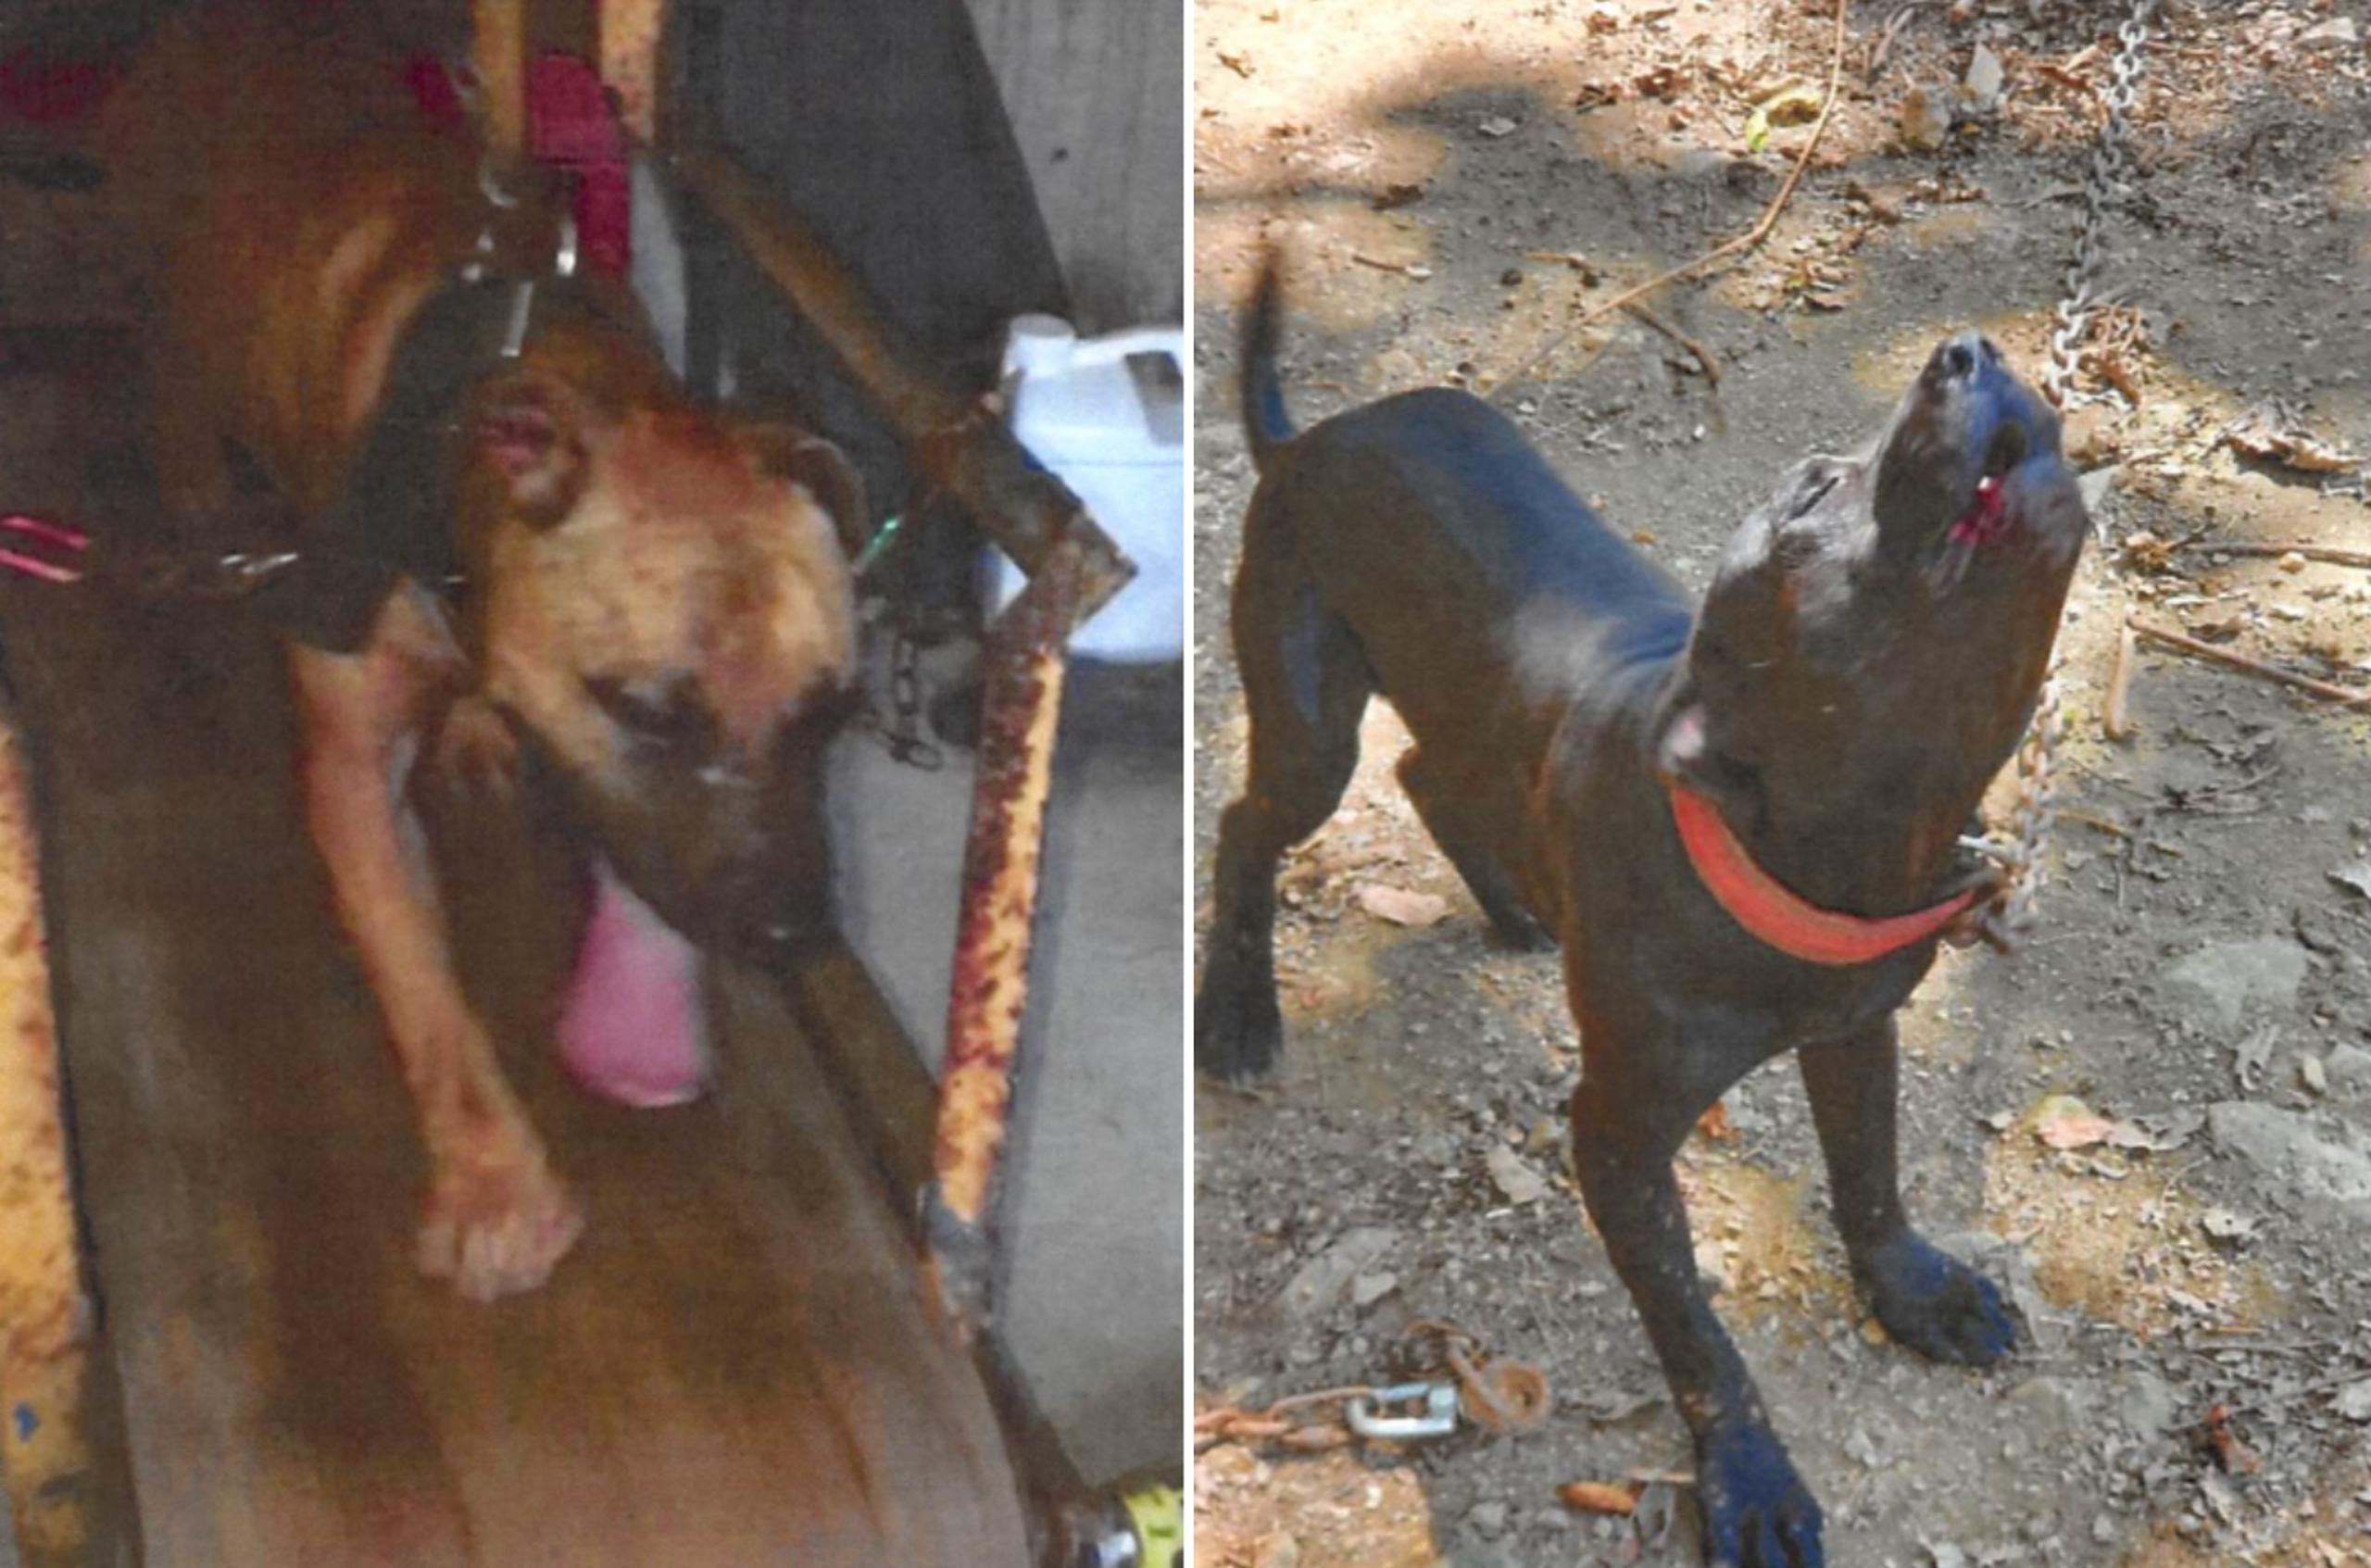 Fotos suministradas por la Fiscalía federal en la acusación contra Antonio Casillas Montero, en la que se observa a un perro en una trotadora y con posibles cicatrices de mordeduras, y otro perro encadenado en una propiedad relacionada al imputado en Humacao.